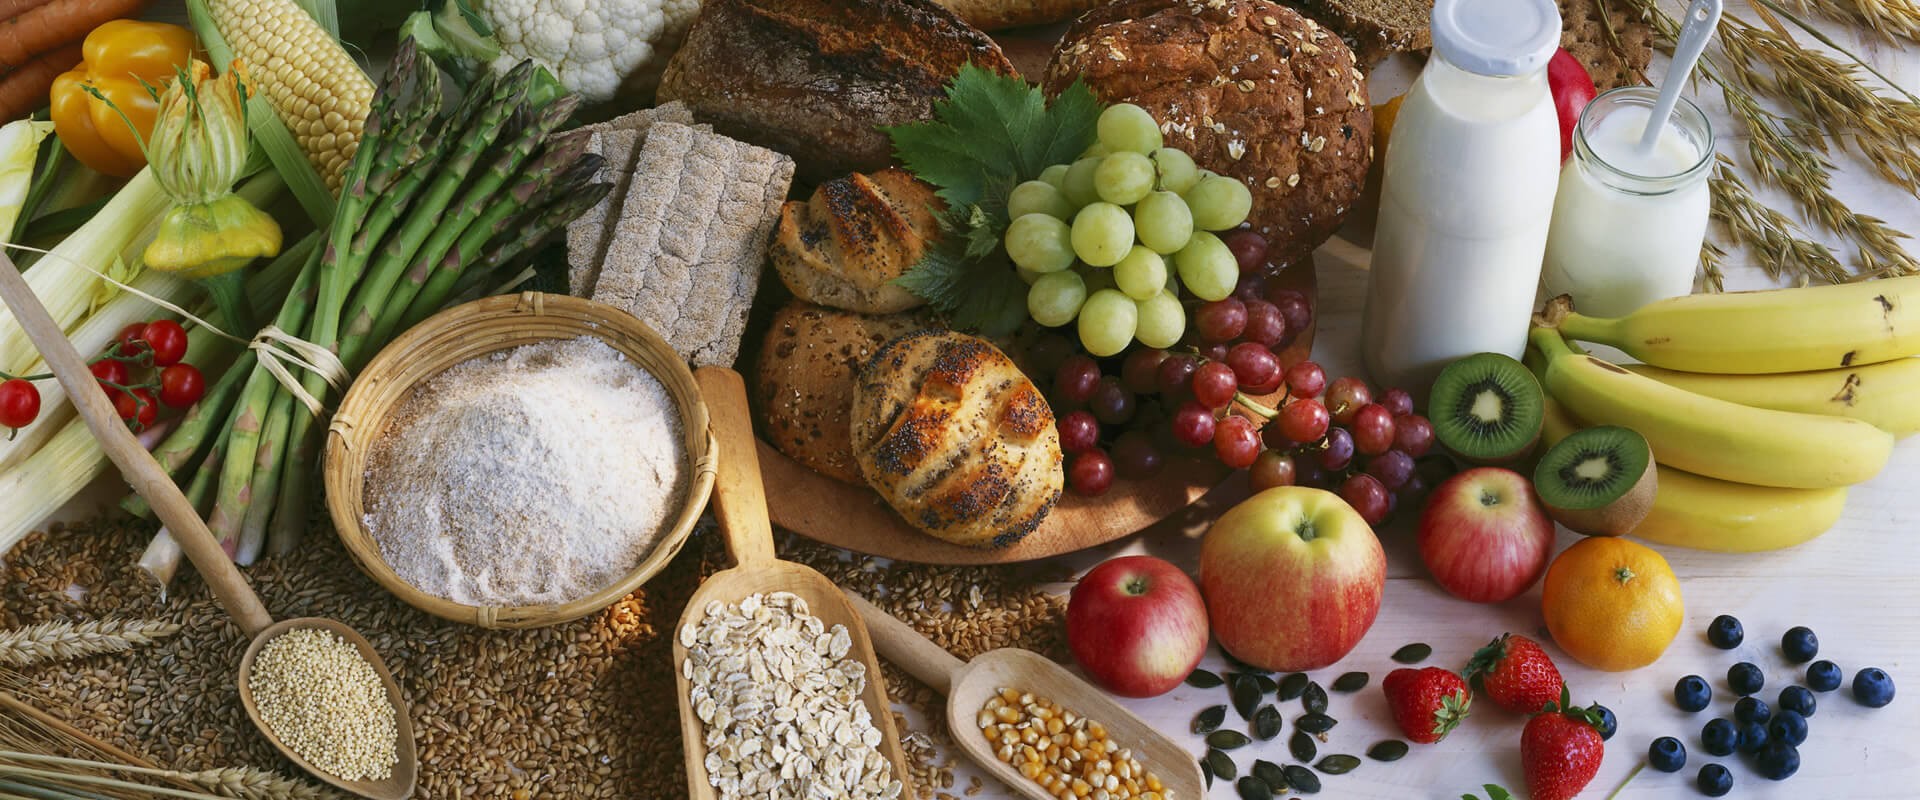 La dieta mediterranea: come seguirla e i suoi benefici per la salute